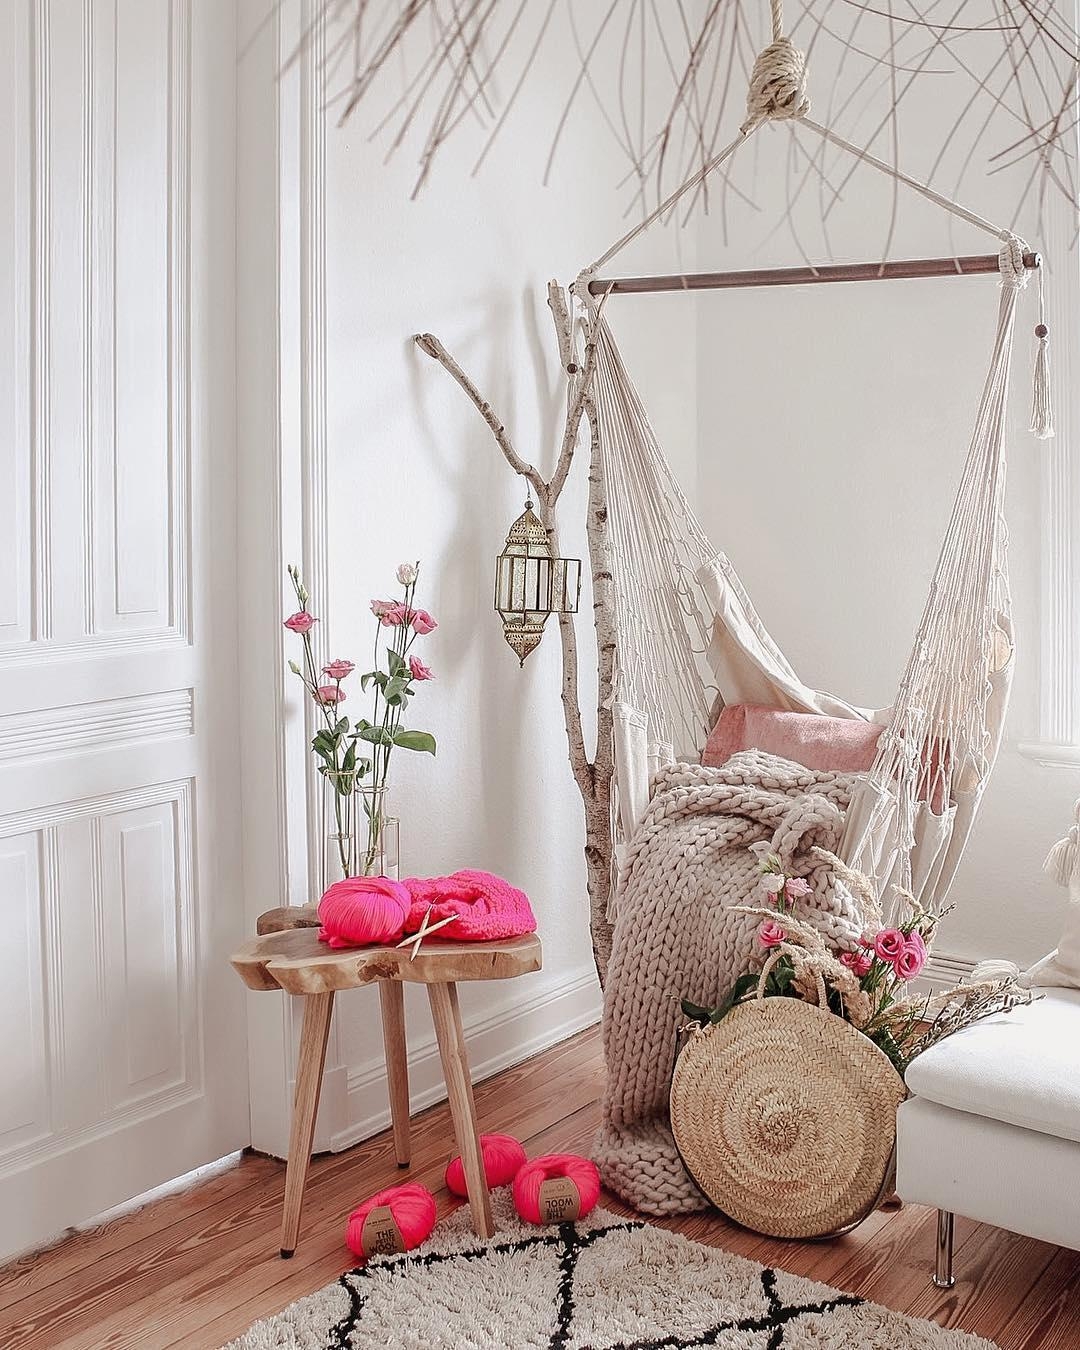 Wer von euch mag auch #Stricken?

#knitspiration #hangingchair #relaxsessel #pink #rosa #hygge #blumen #frühling